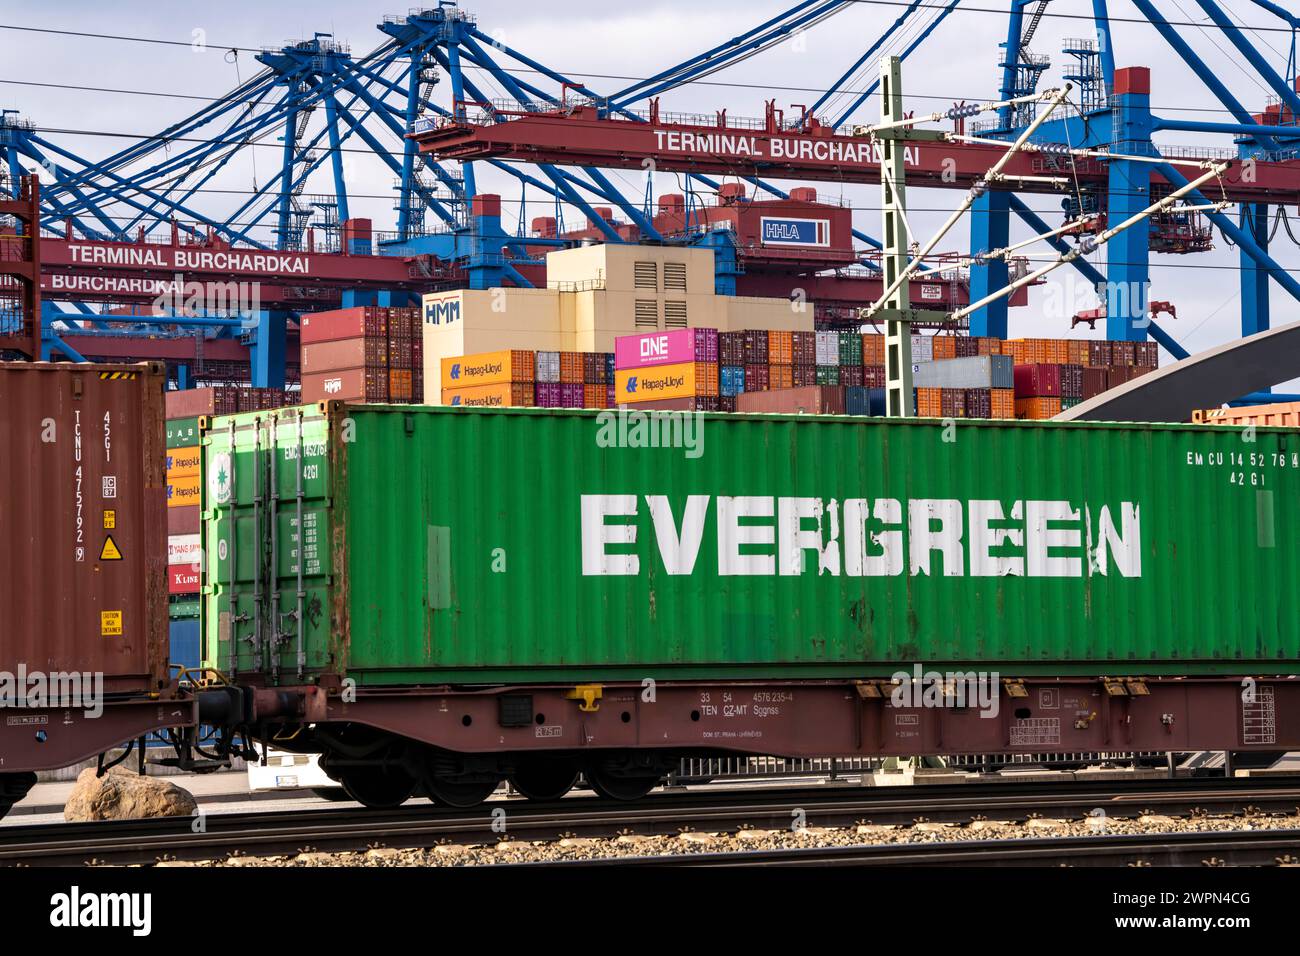 Hamburger Hafen, Waltershofer Hafen, Containerschiffe, Güterzug bringt und holt Frachtcontainer zum und vom HHLA Containerterminal Burchar Stockfoto